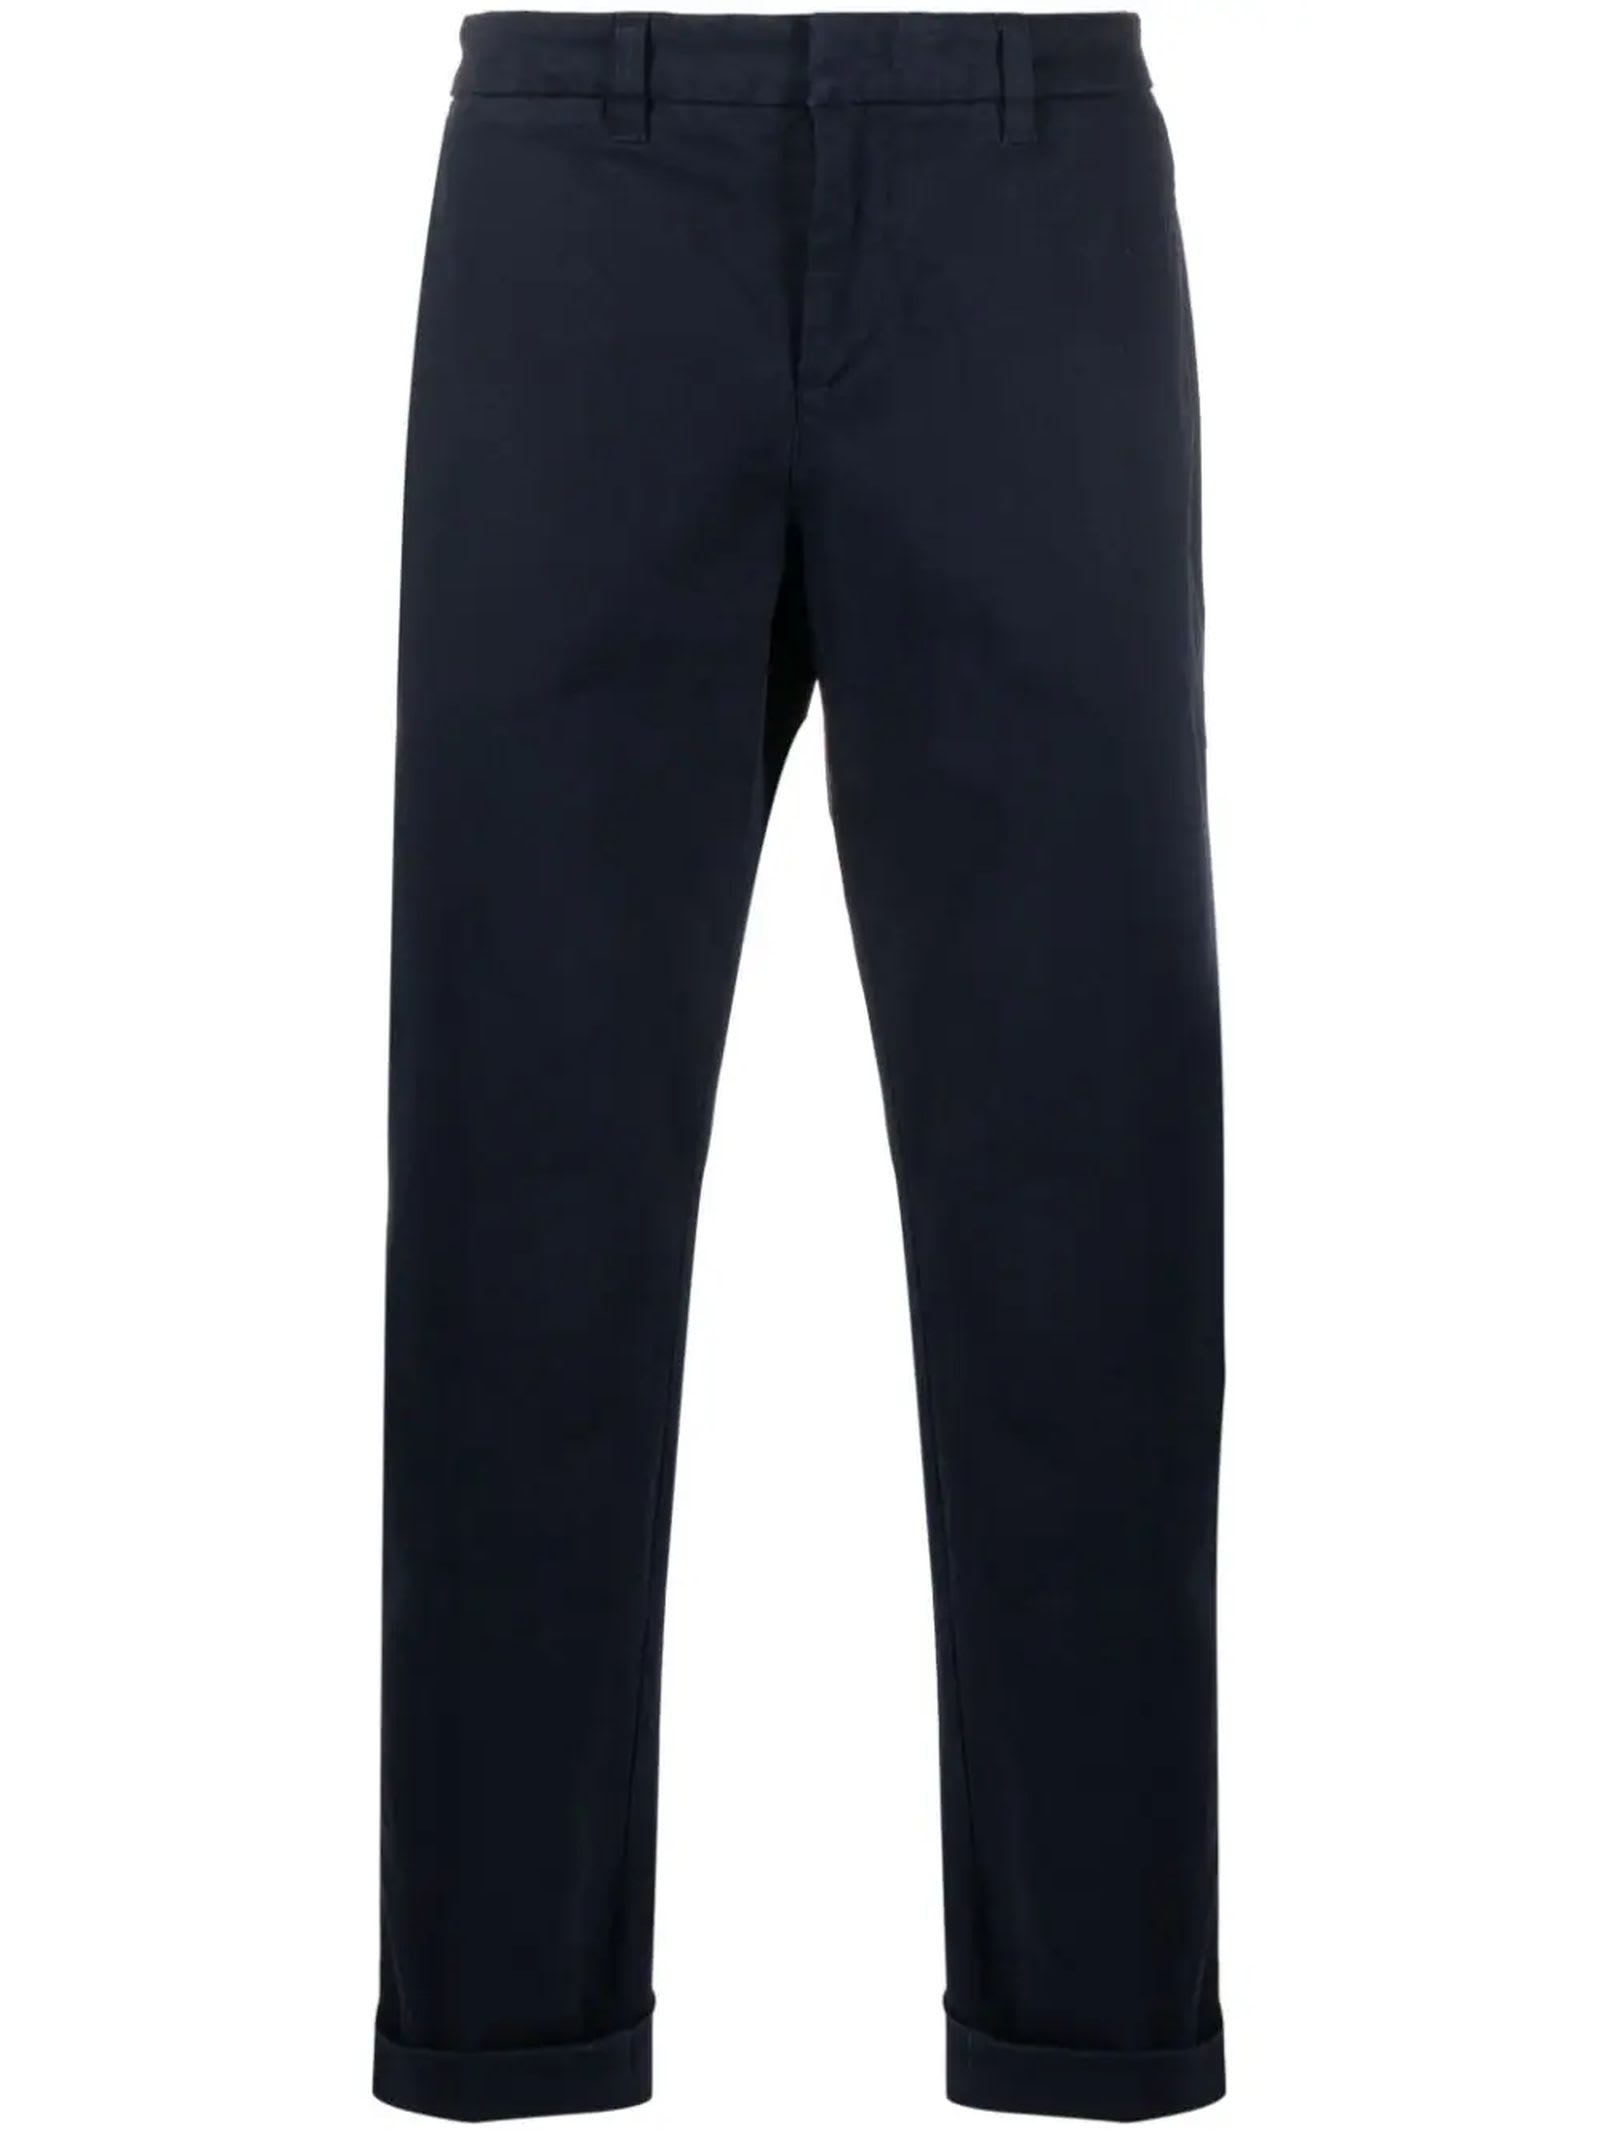 Navy Blue Capri Cotton Trousers